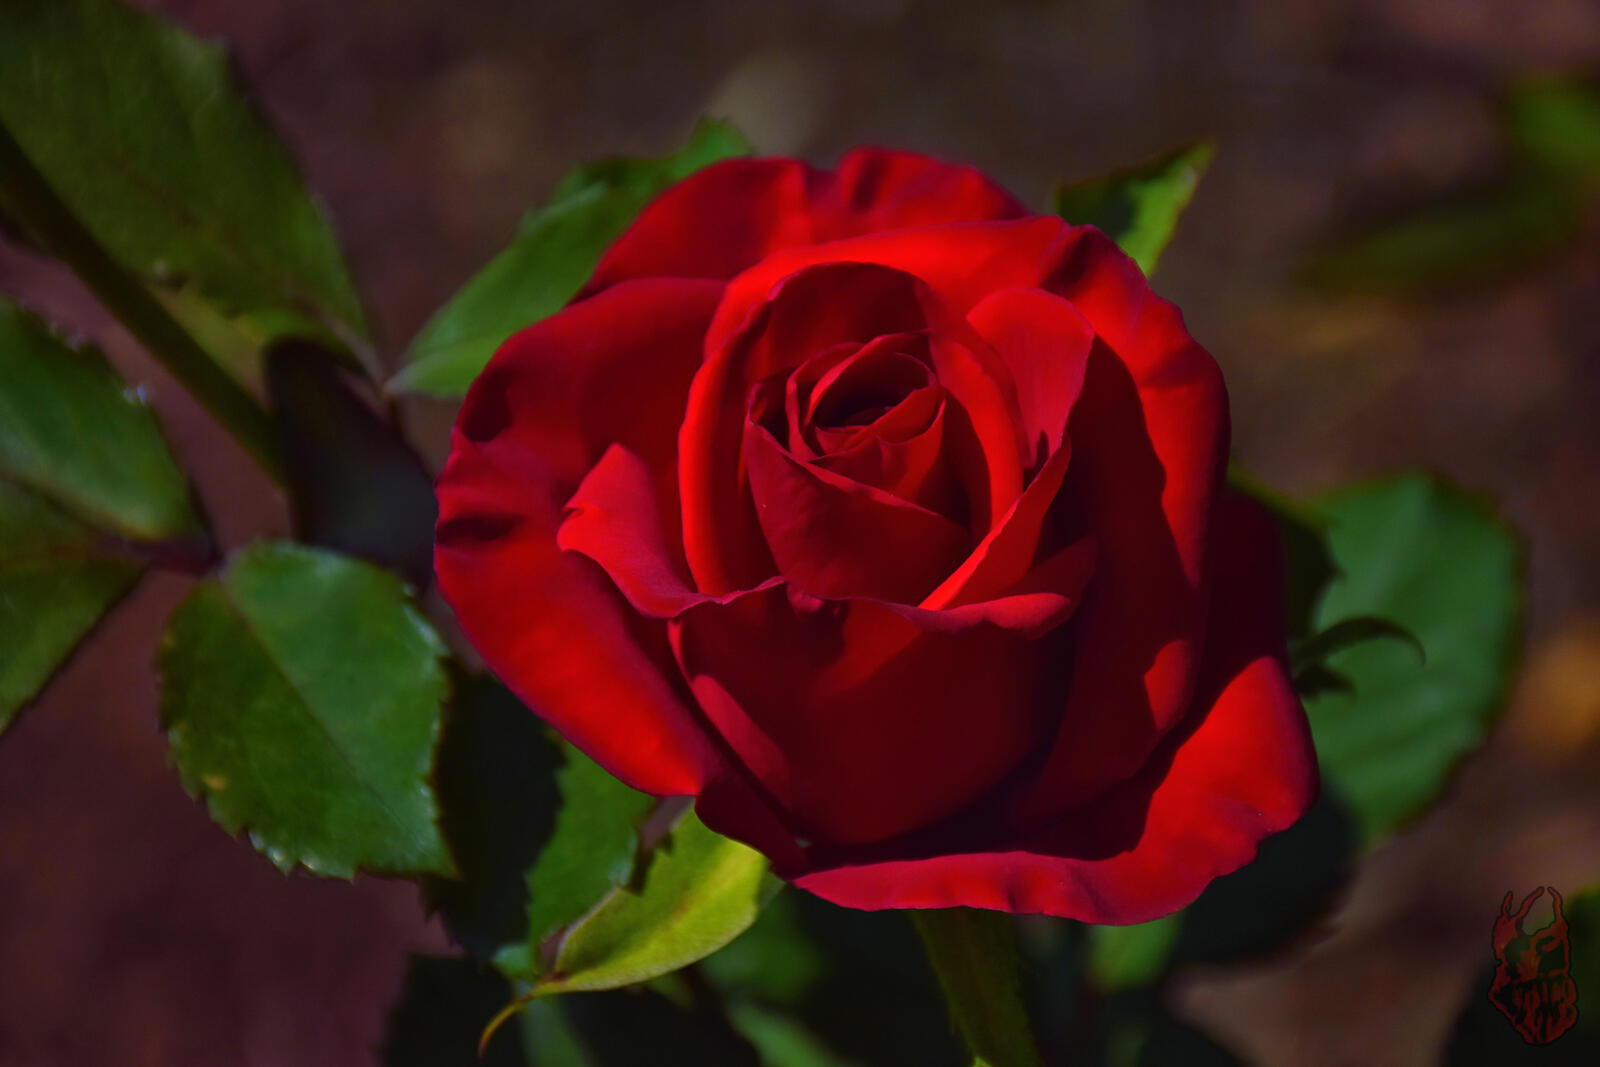 Покажи фотографию роз. Ред ред Роуз. Красивые розы. Красные розы. Розы картинки.